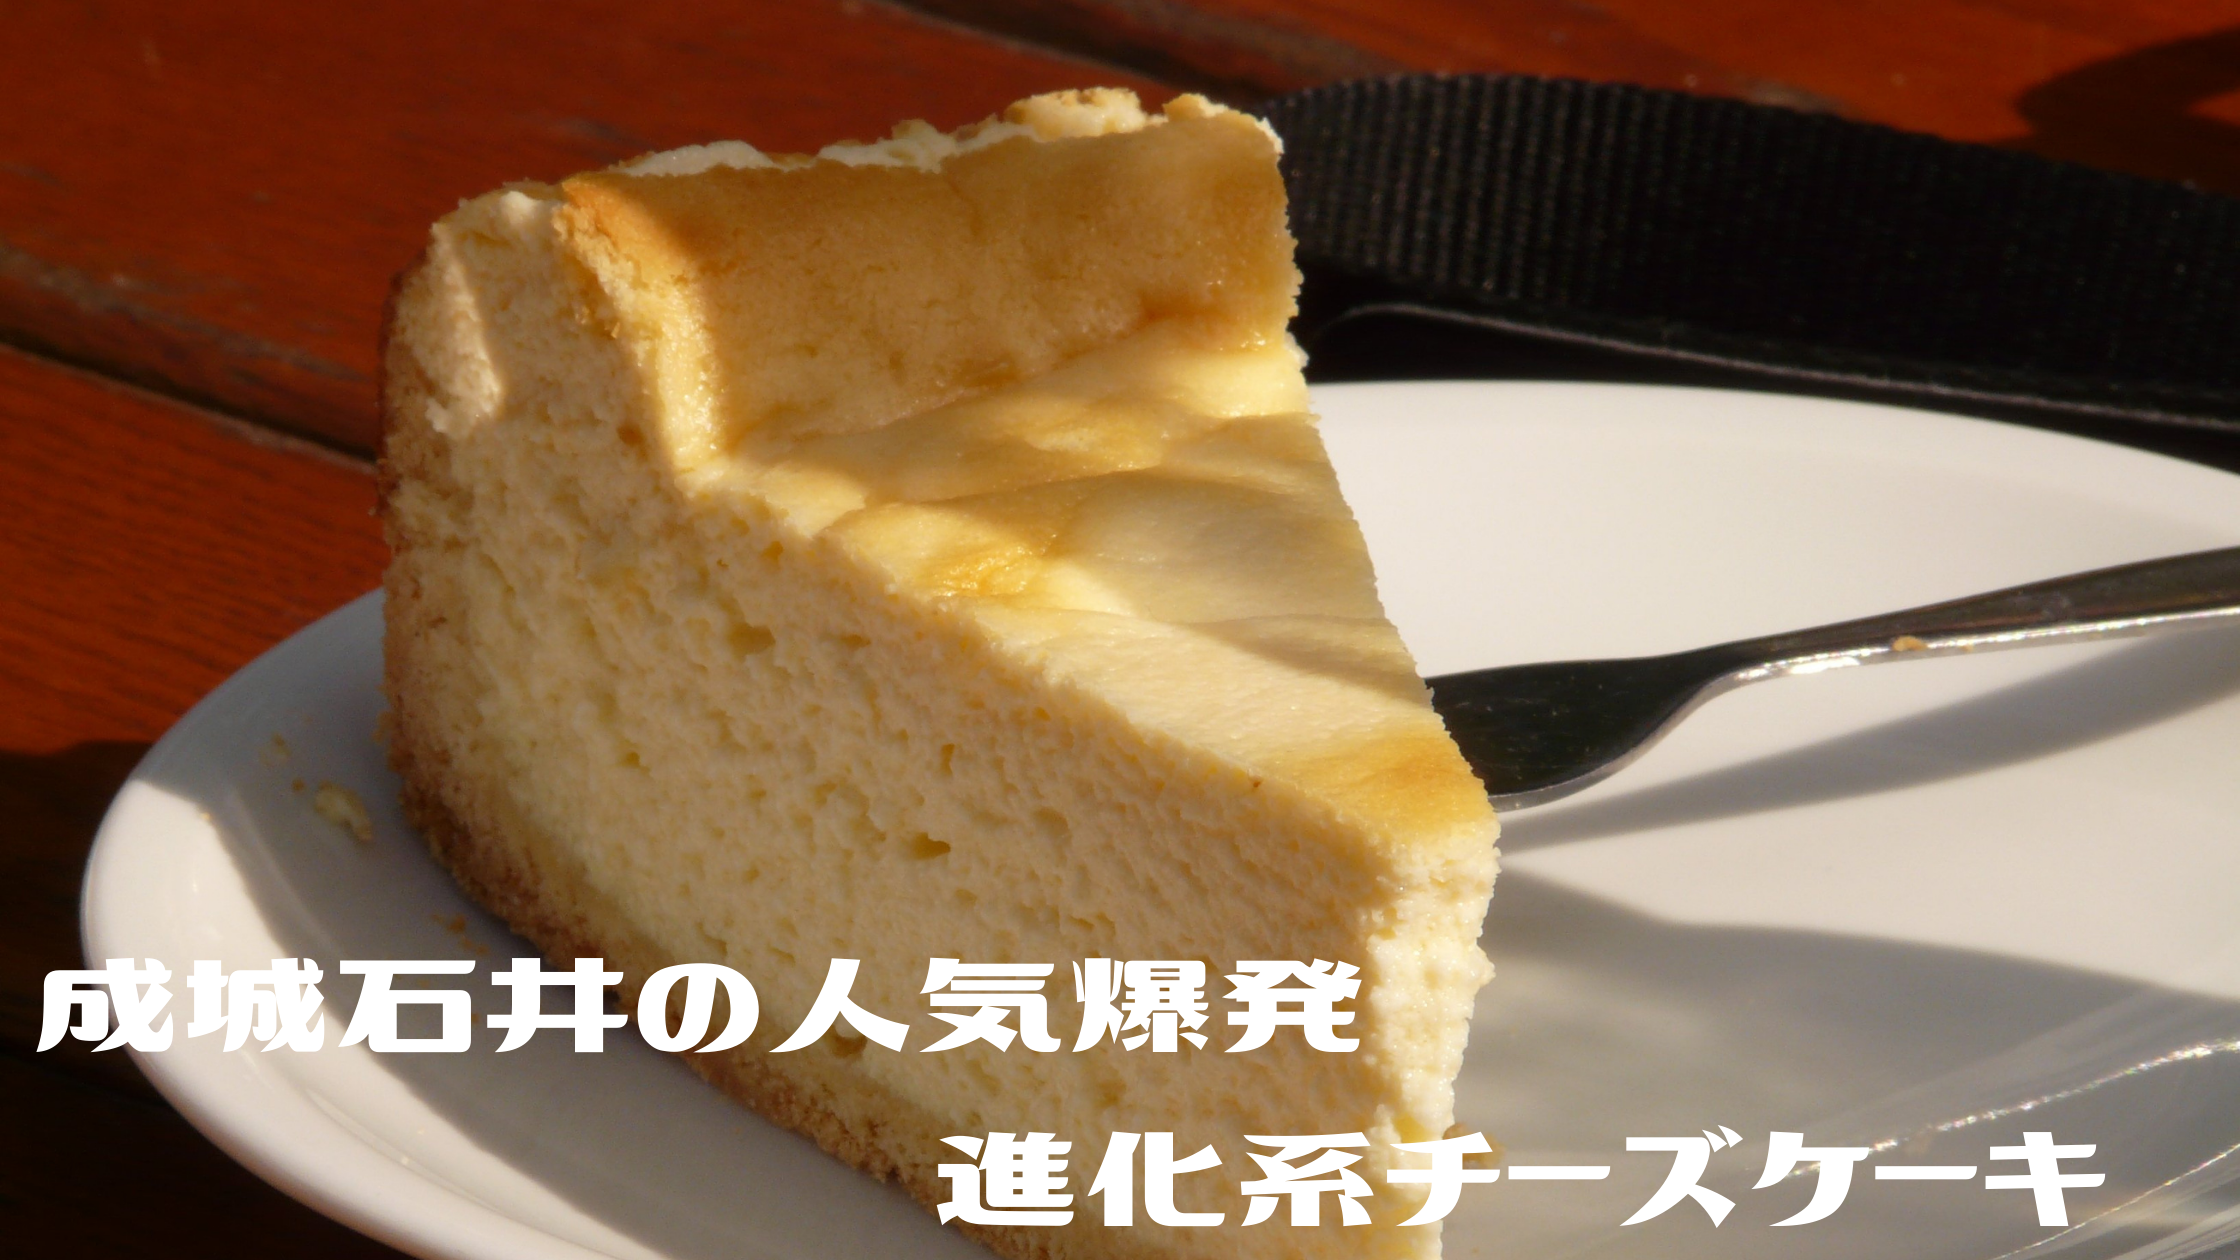 【シューイチ】成城石井『最優秀賞レモンのチーズケーキ』『マロンたっぷりチーズケーキ』リピーター続出